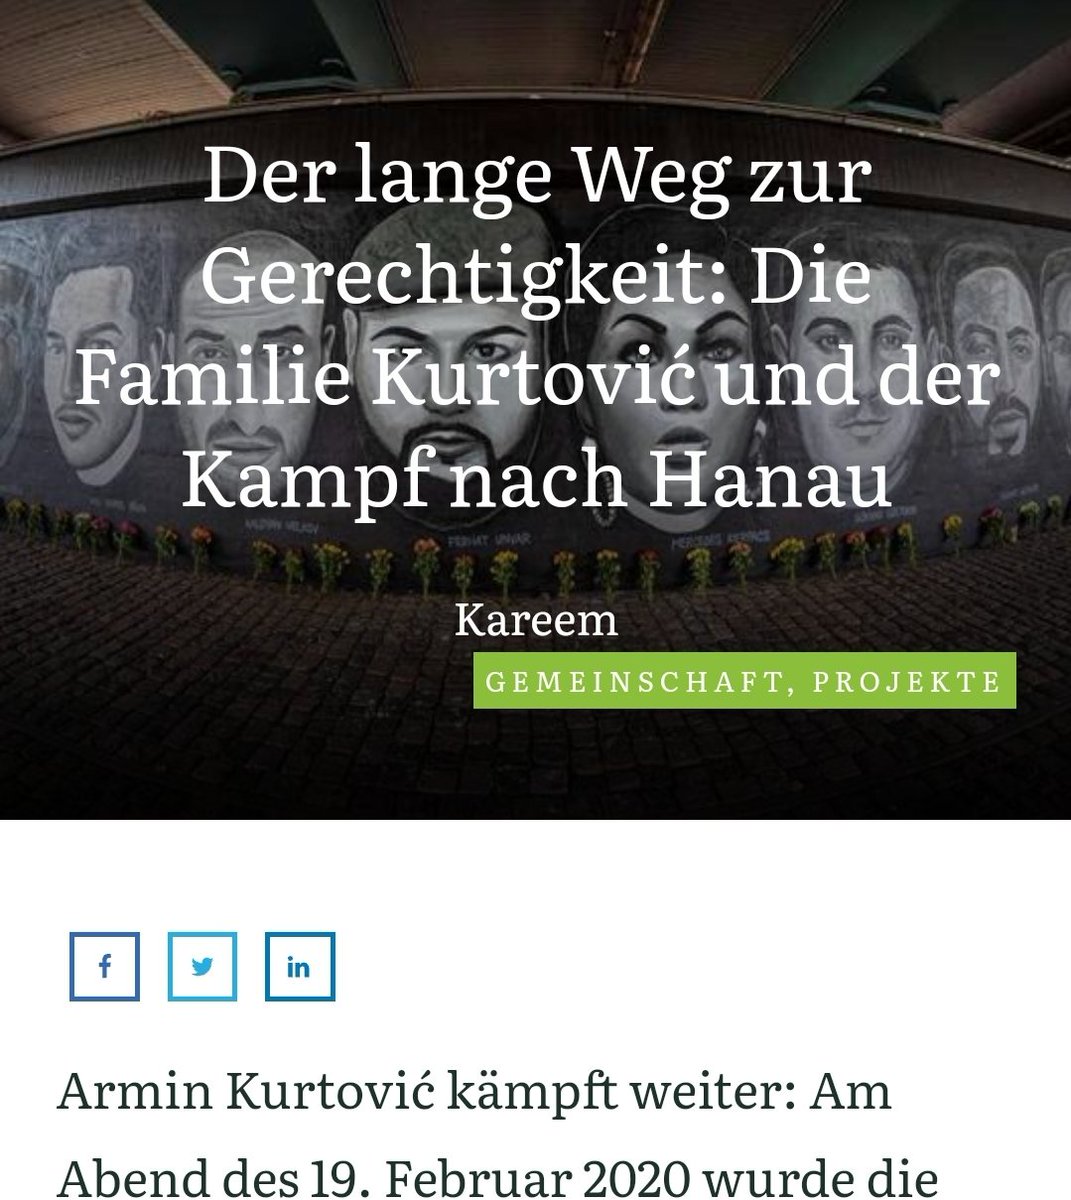 +++Spenden Kampagne für Juristische Aufklärung +++ Support! blog.commonsplace.de/der-lange-weg-… @armin_kurtovic